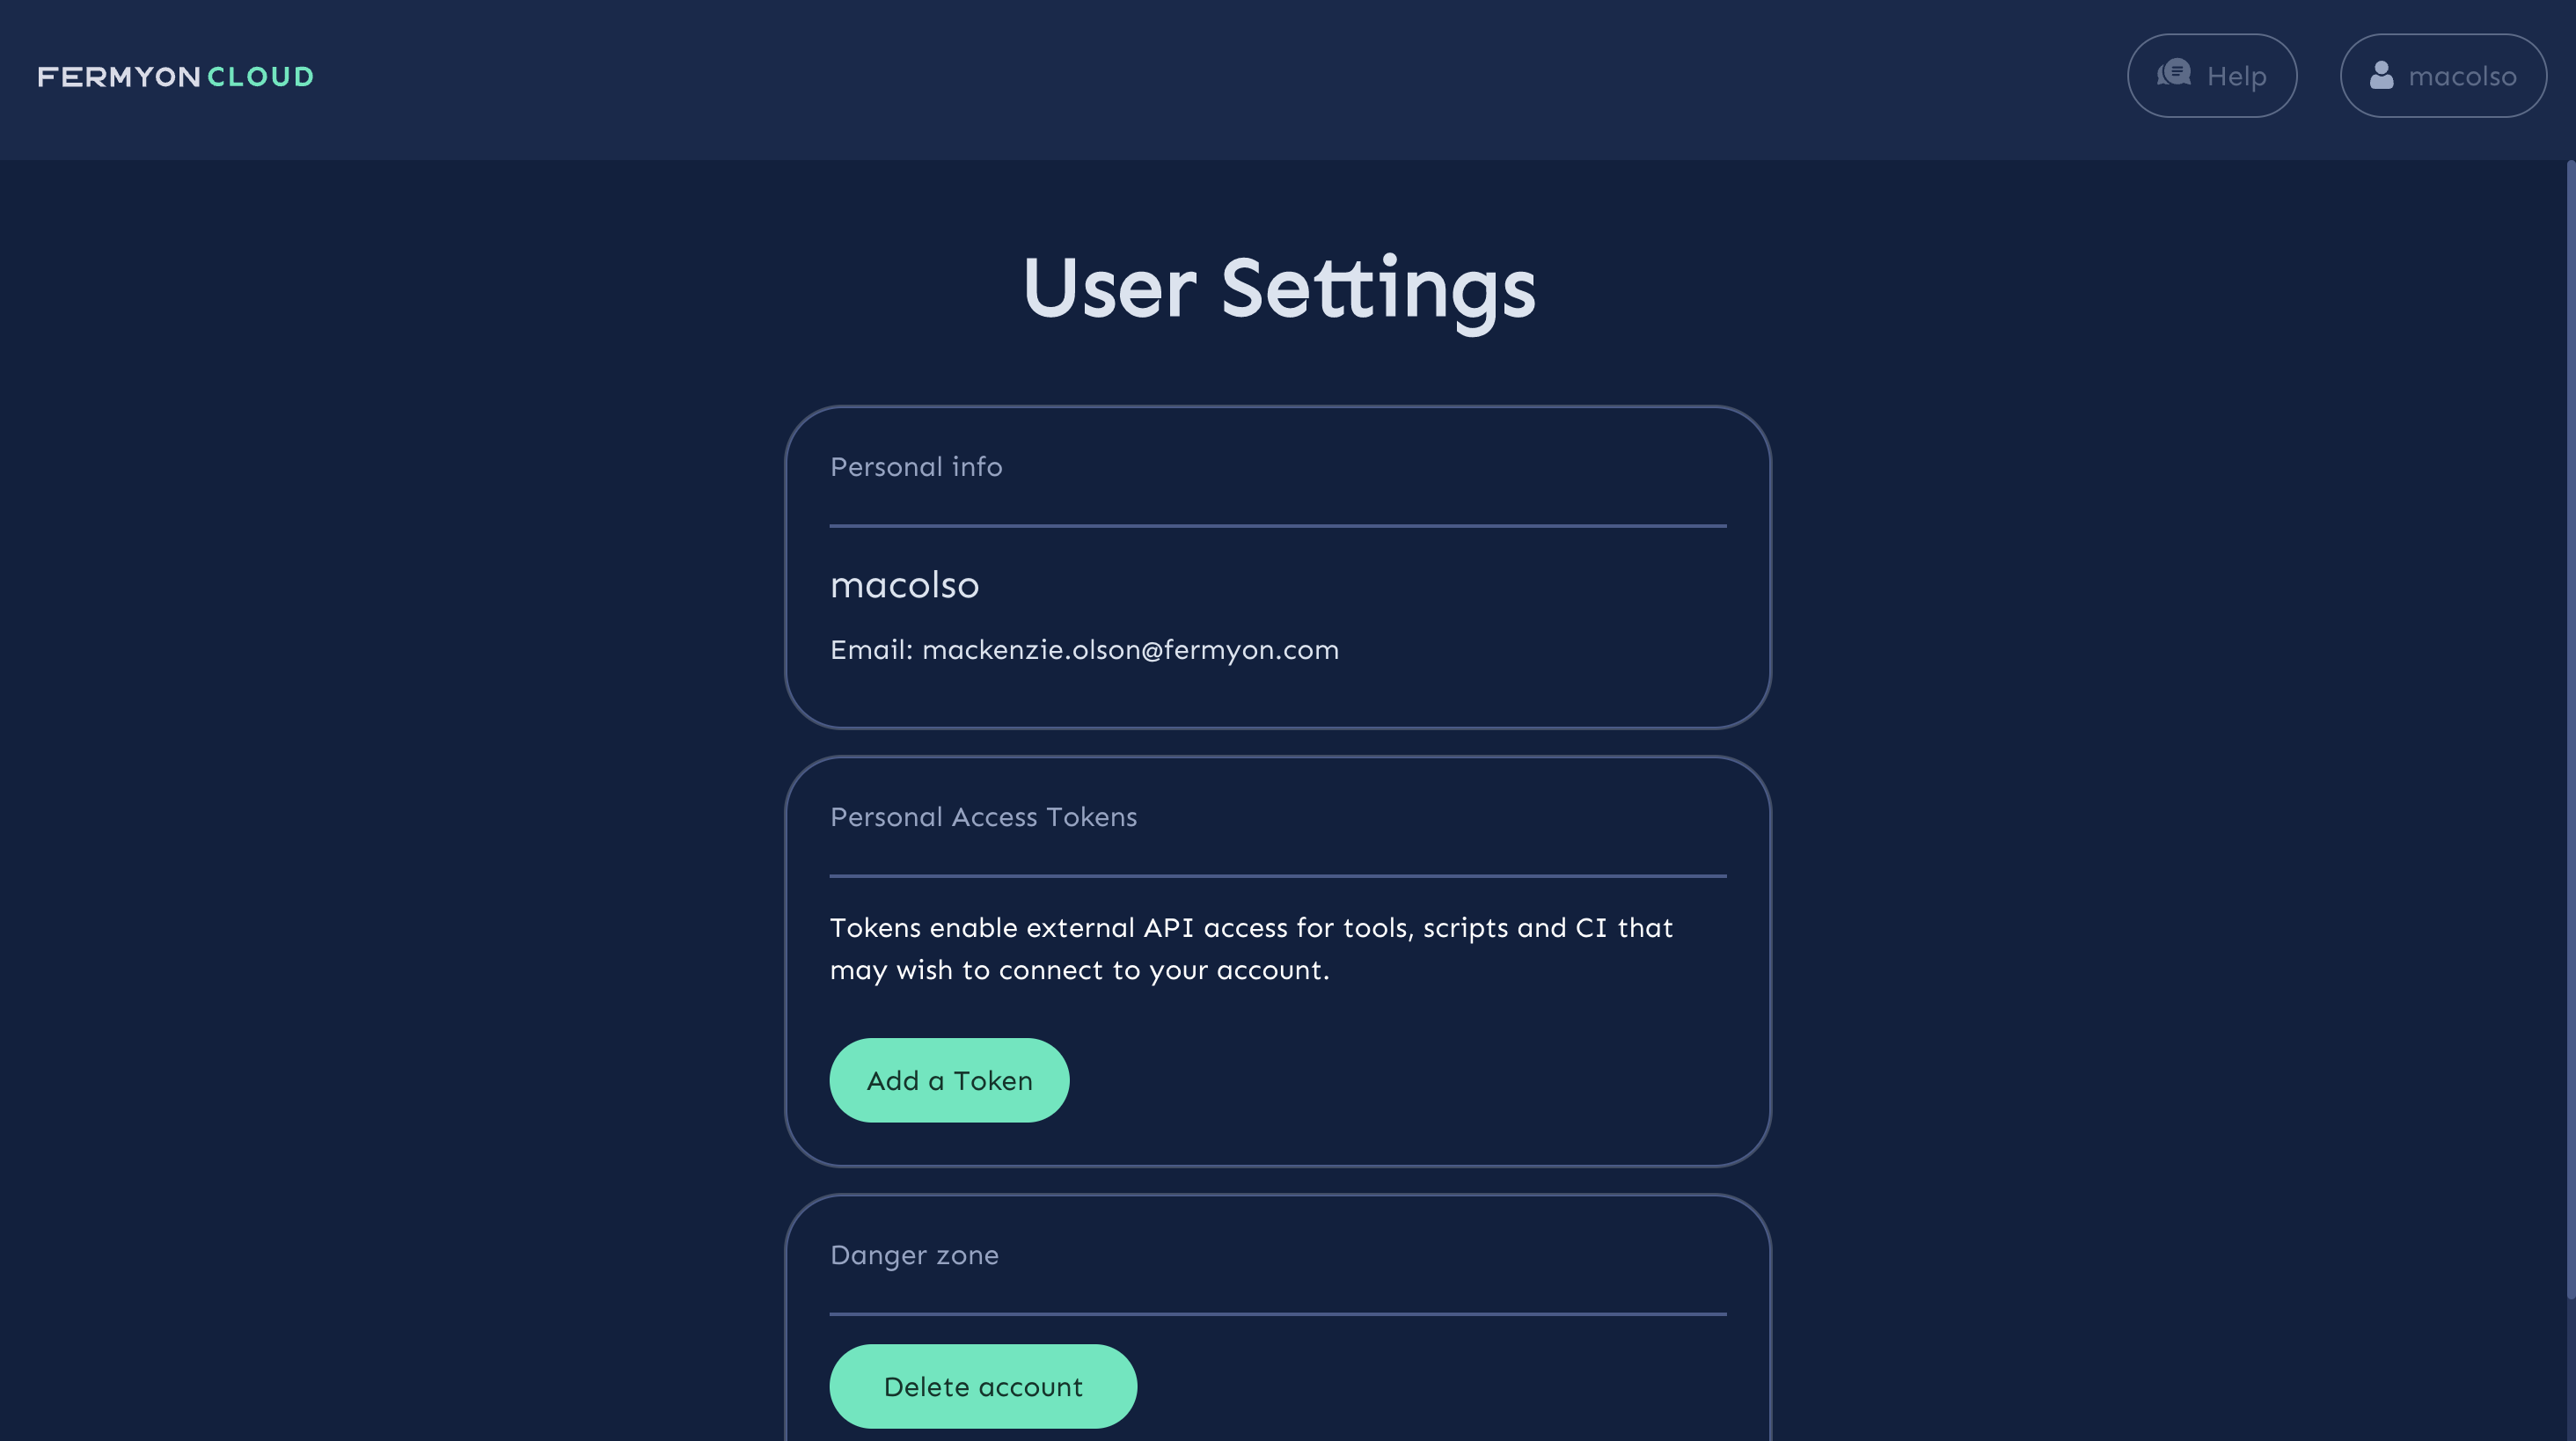 User settings view